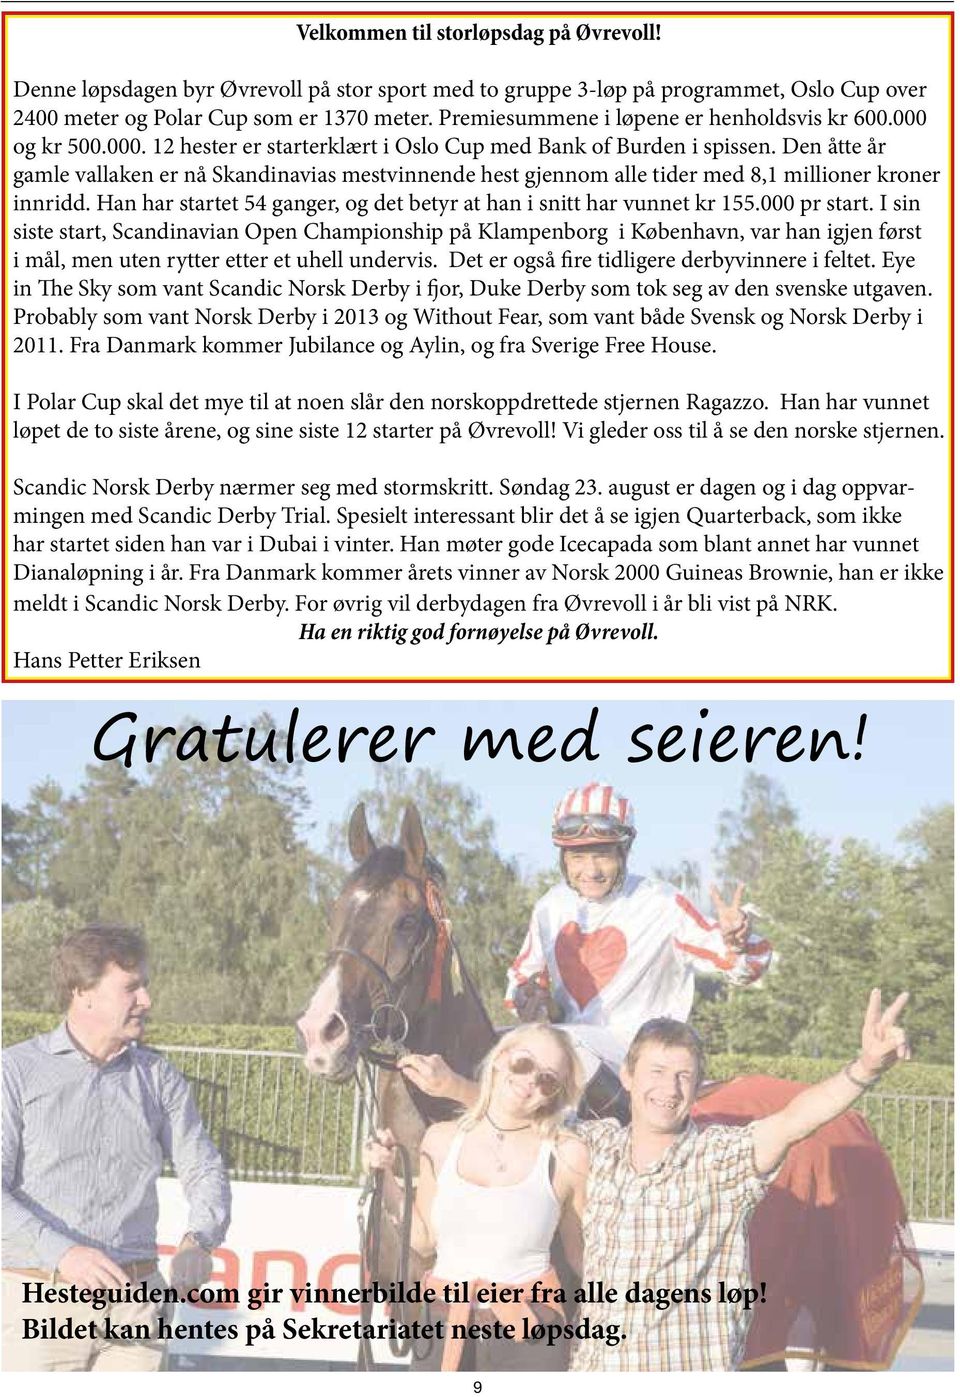 Den åtte år gamle vallaken er nå Skandinavias mestvinnende hest gjennom alle tider med 8,1 millioner kroner innridd. Han har startet 54 ganger, og det betyr at han i snitt har vunnet kr 155.